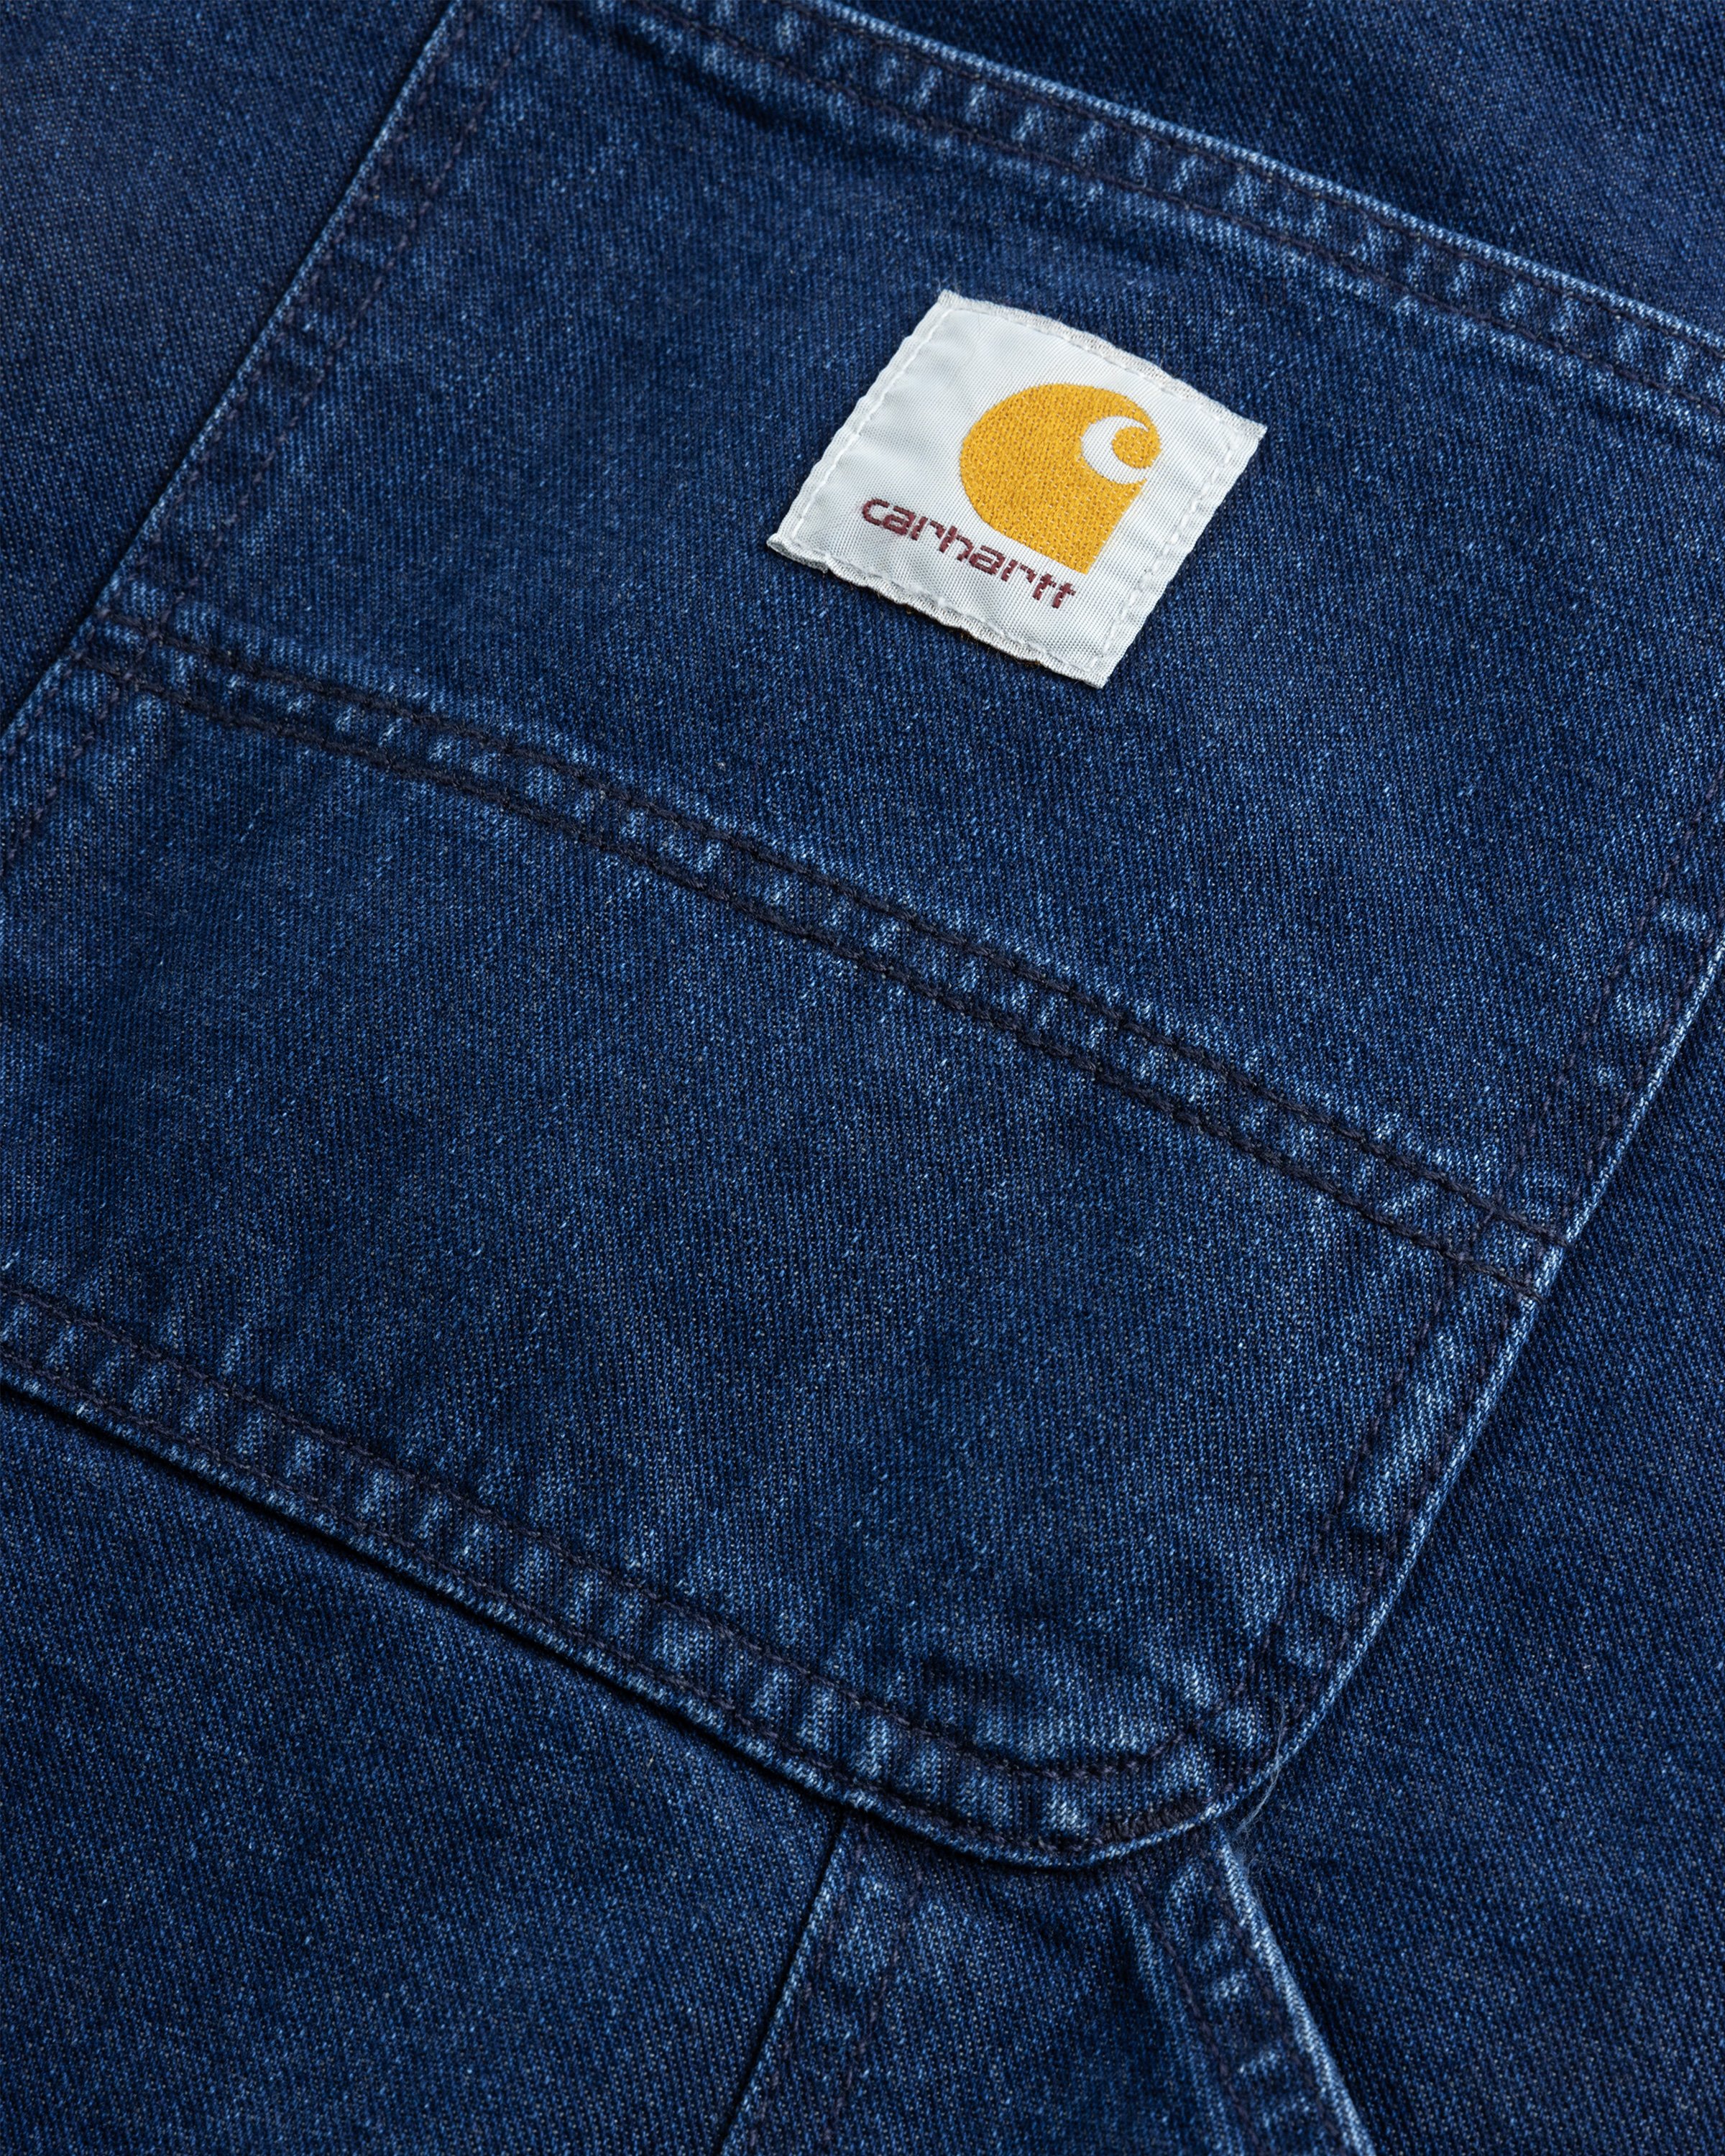 Carhartt WIP - OG Single Knee Pant Blue /stone washed - Clothing - Blue - Image 7